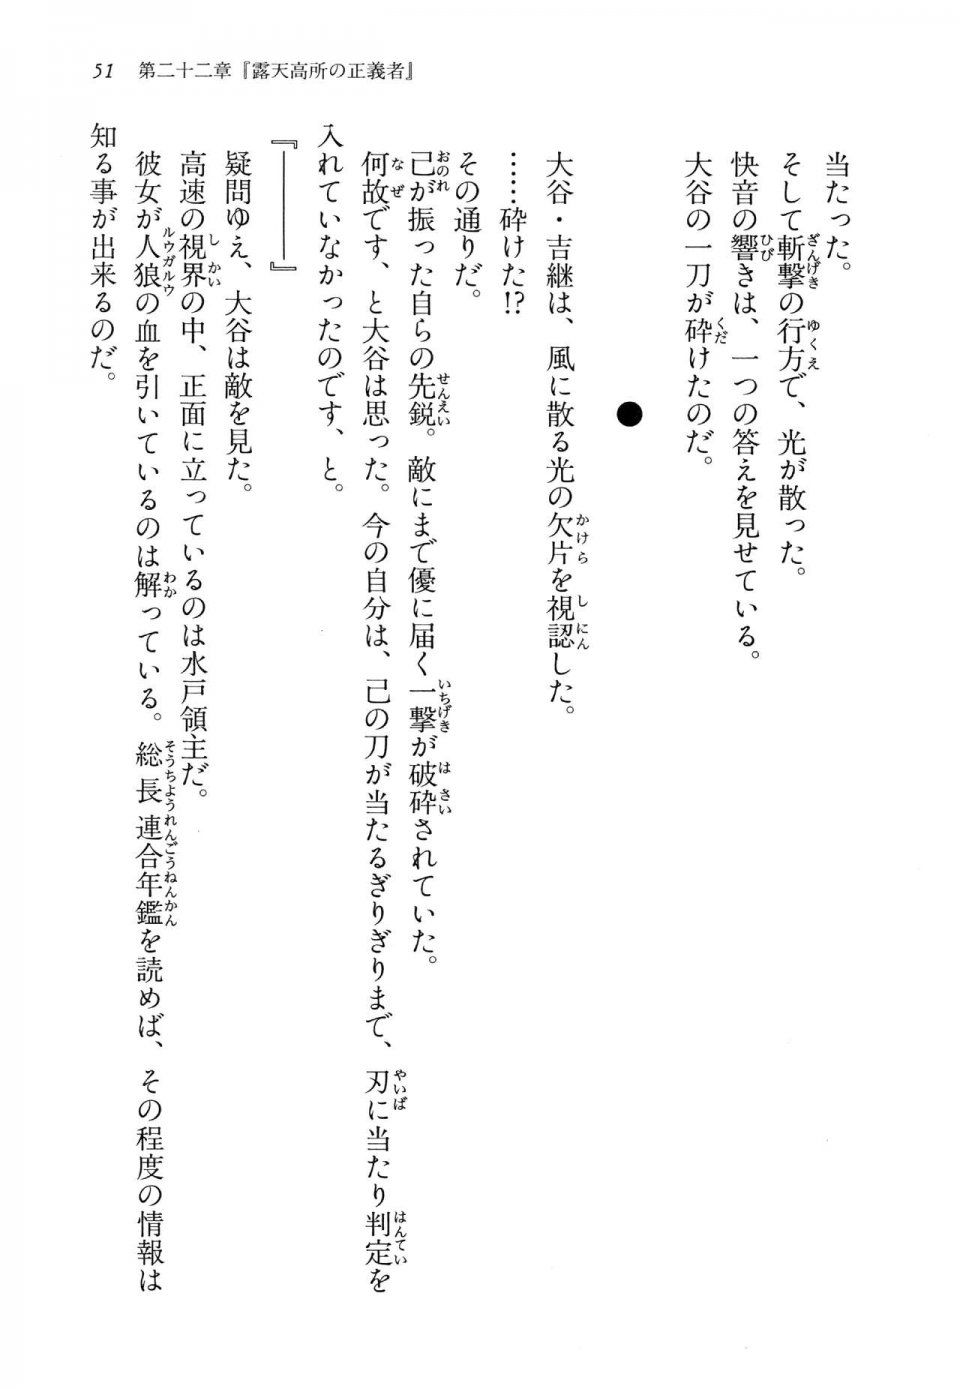 Kyoukai Senjou no Horizon LN Vol 14(6B) - Photo #51